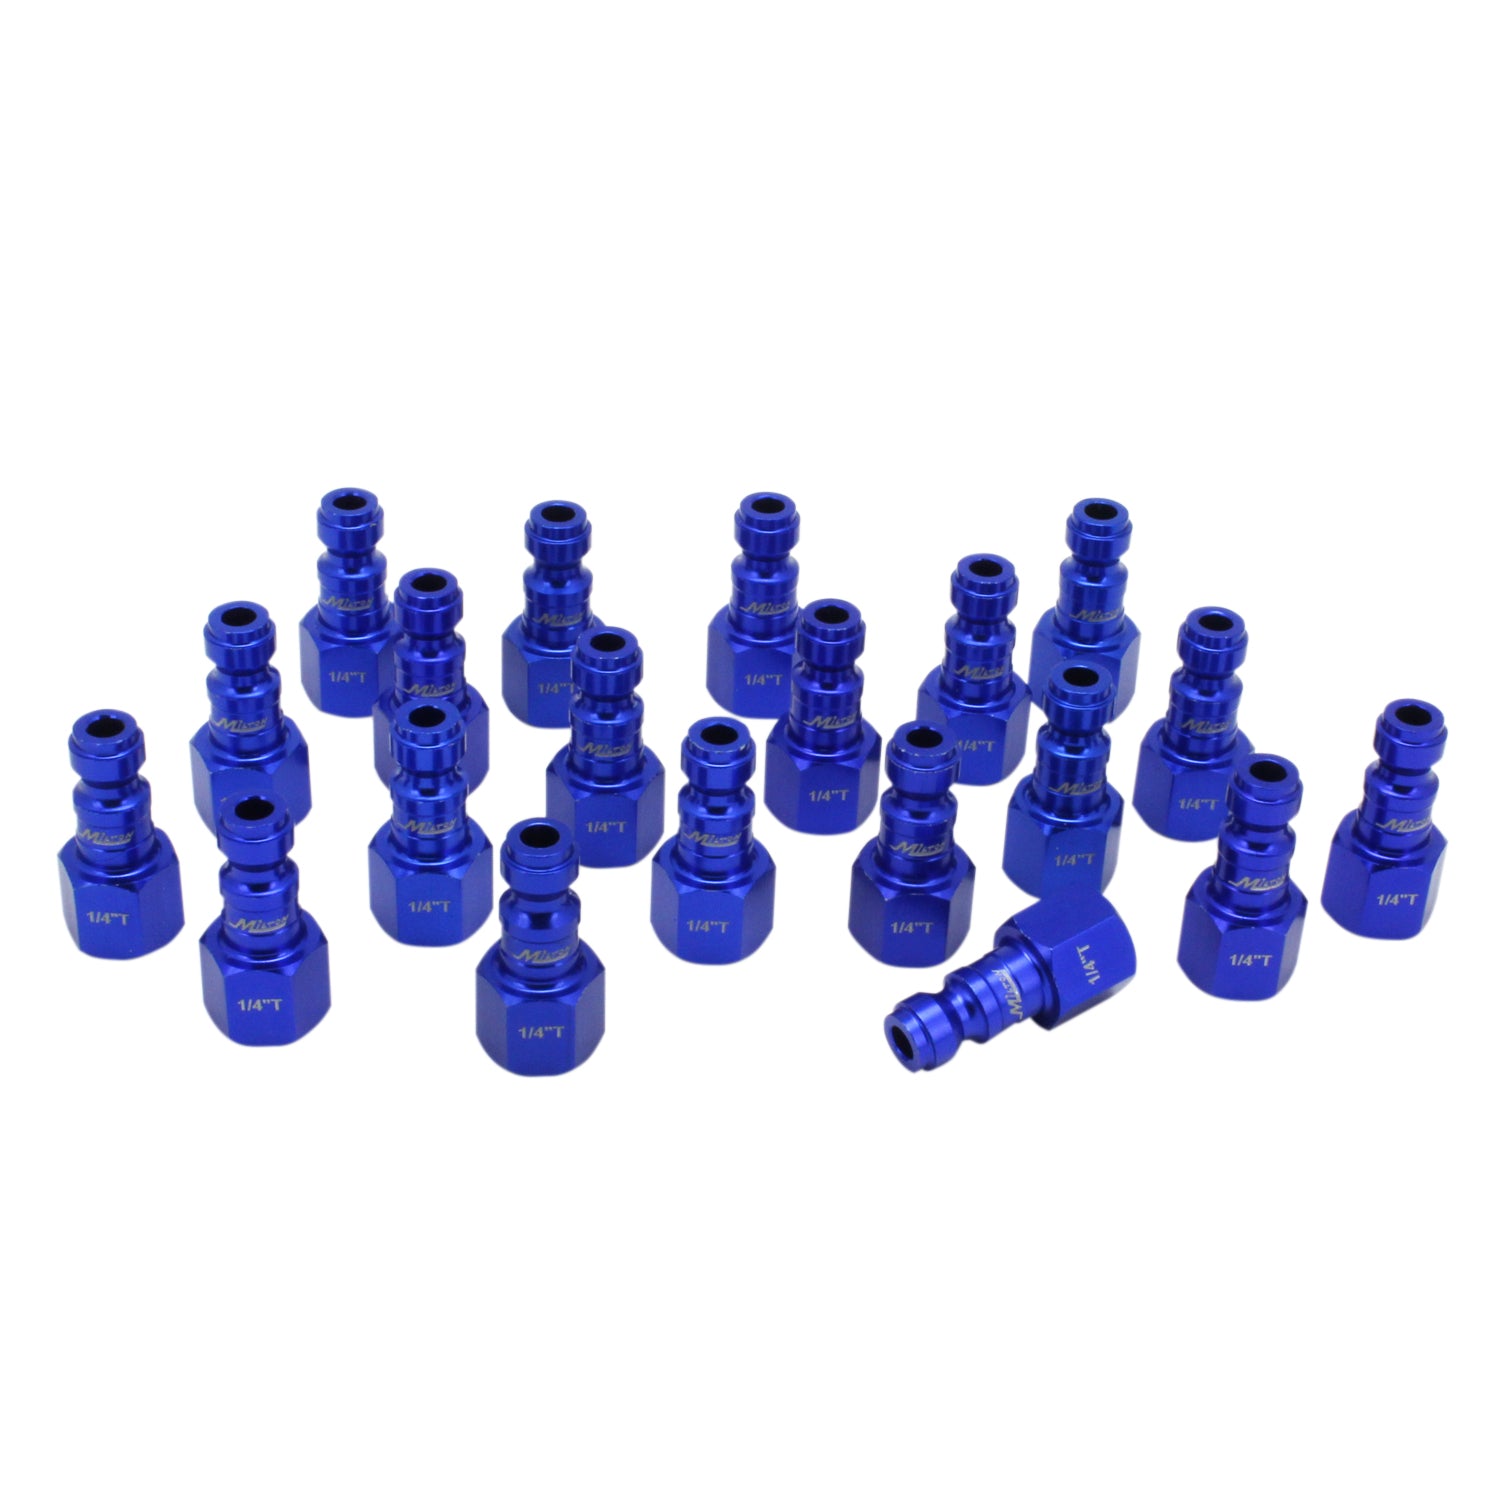 COLORFIT® Plugs (T-Style, Blue) - 1/4